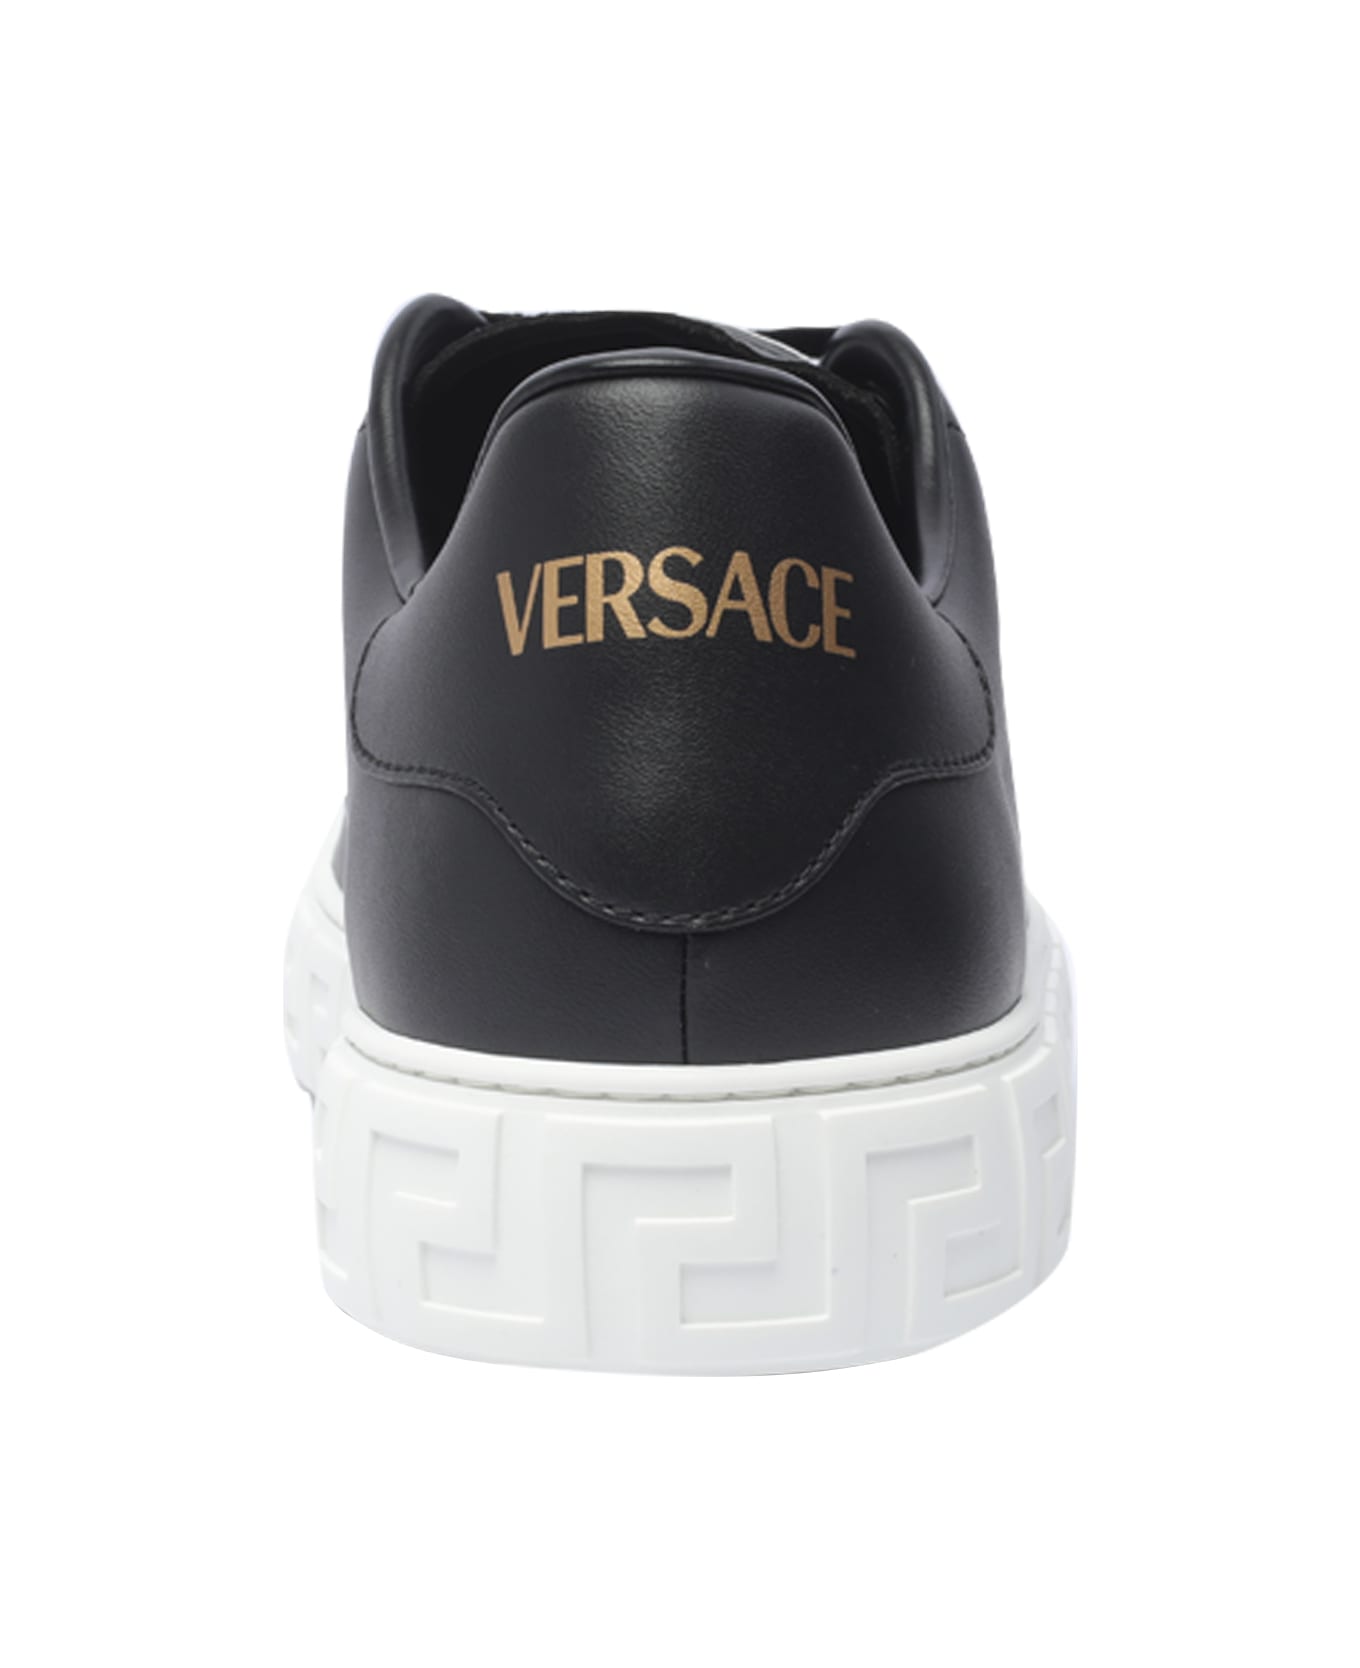 Versace Greca Sneakers - Black